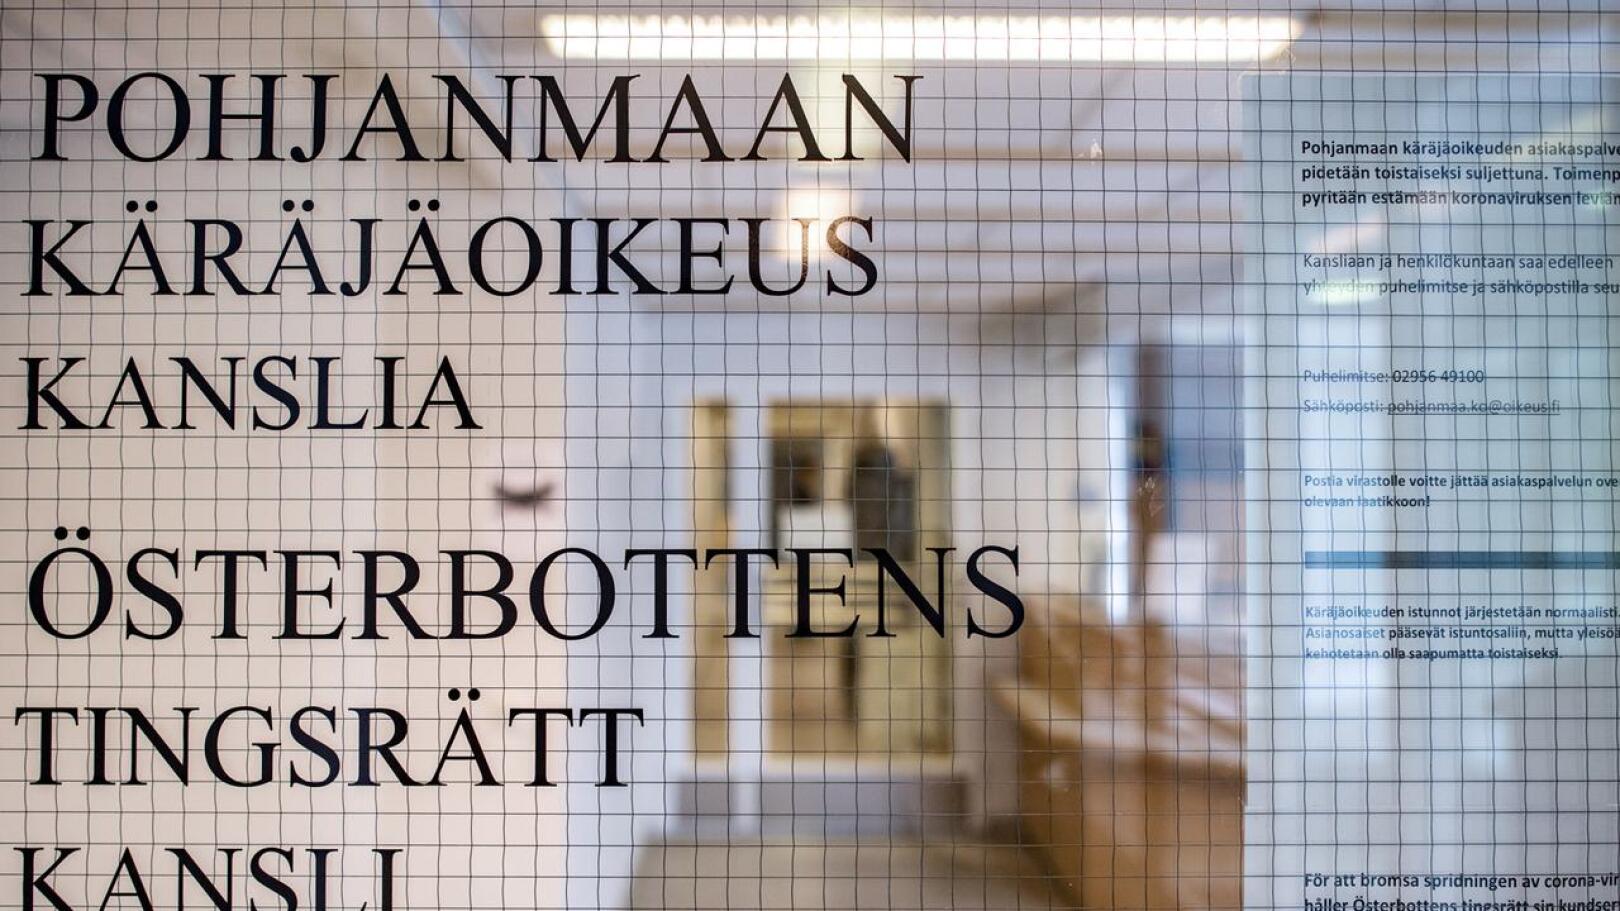 Kannuslainen noin 40-vuotias mies tuomittiin Pohjanmaan käräjäoikeudessa Kokkolassa vuoden ehdottomaan vankeusrangaistukseen.